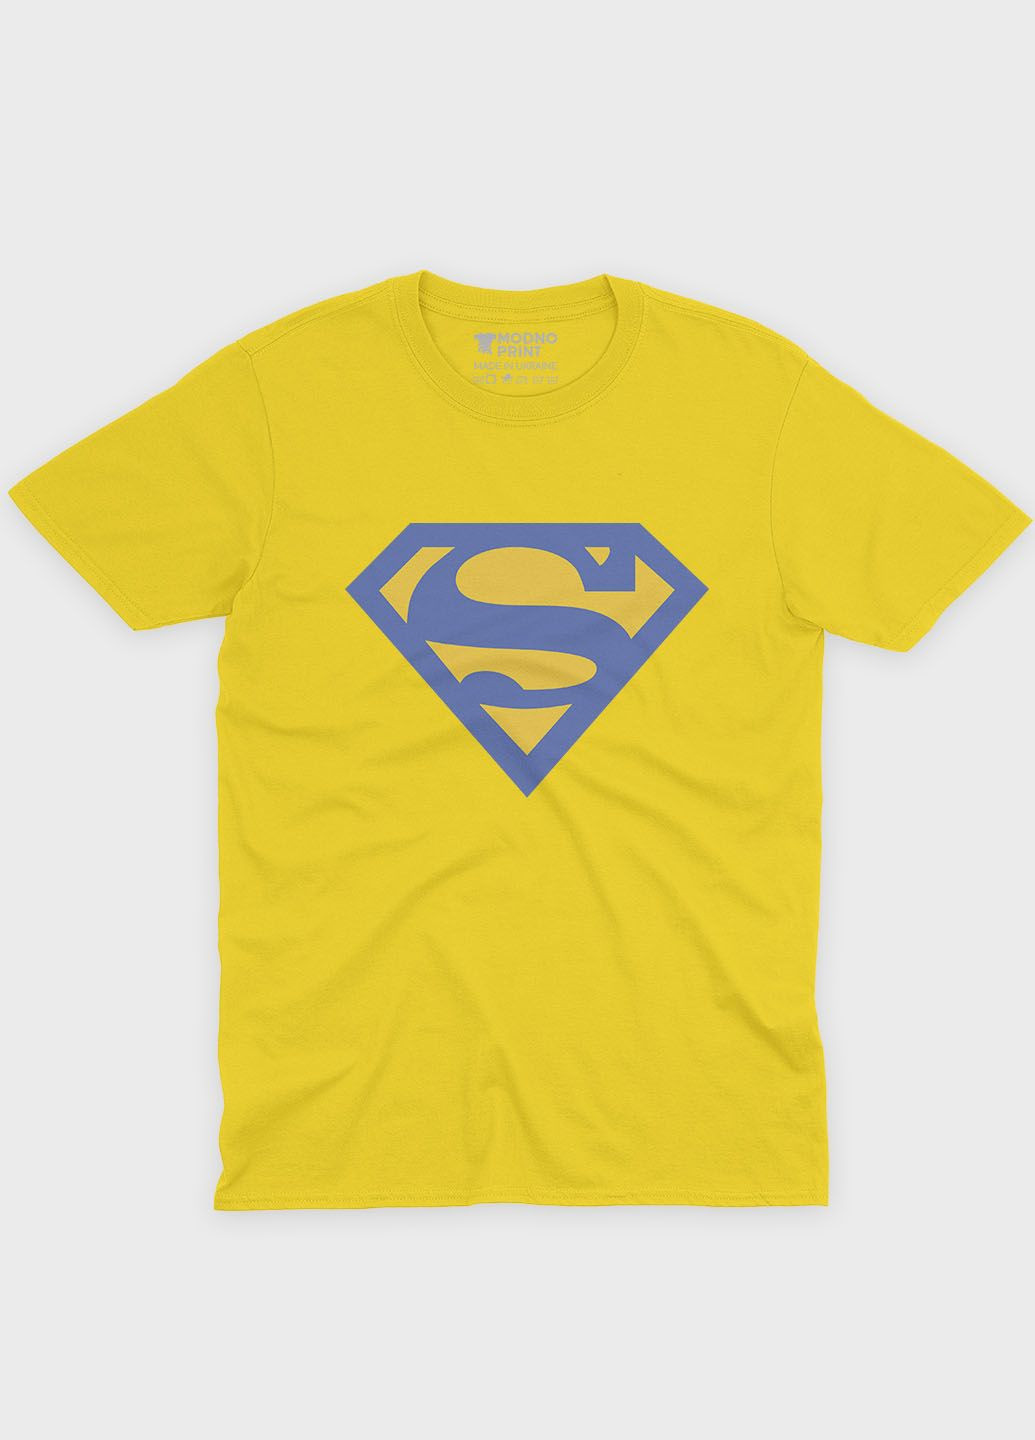 Жовта демісезонна футболка для хлопчика з патріотичним принтом (ts001-3-sun-005-1-060-b) Modno